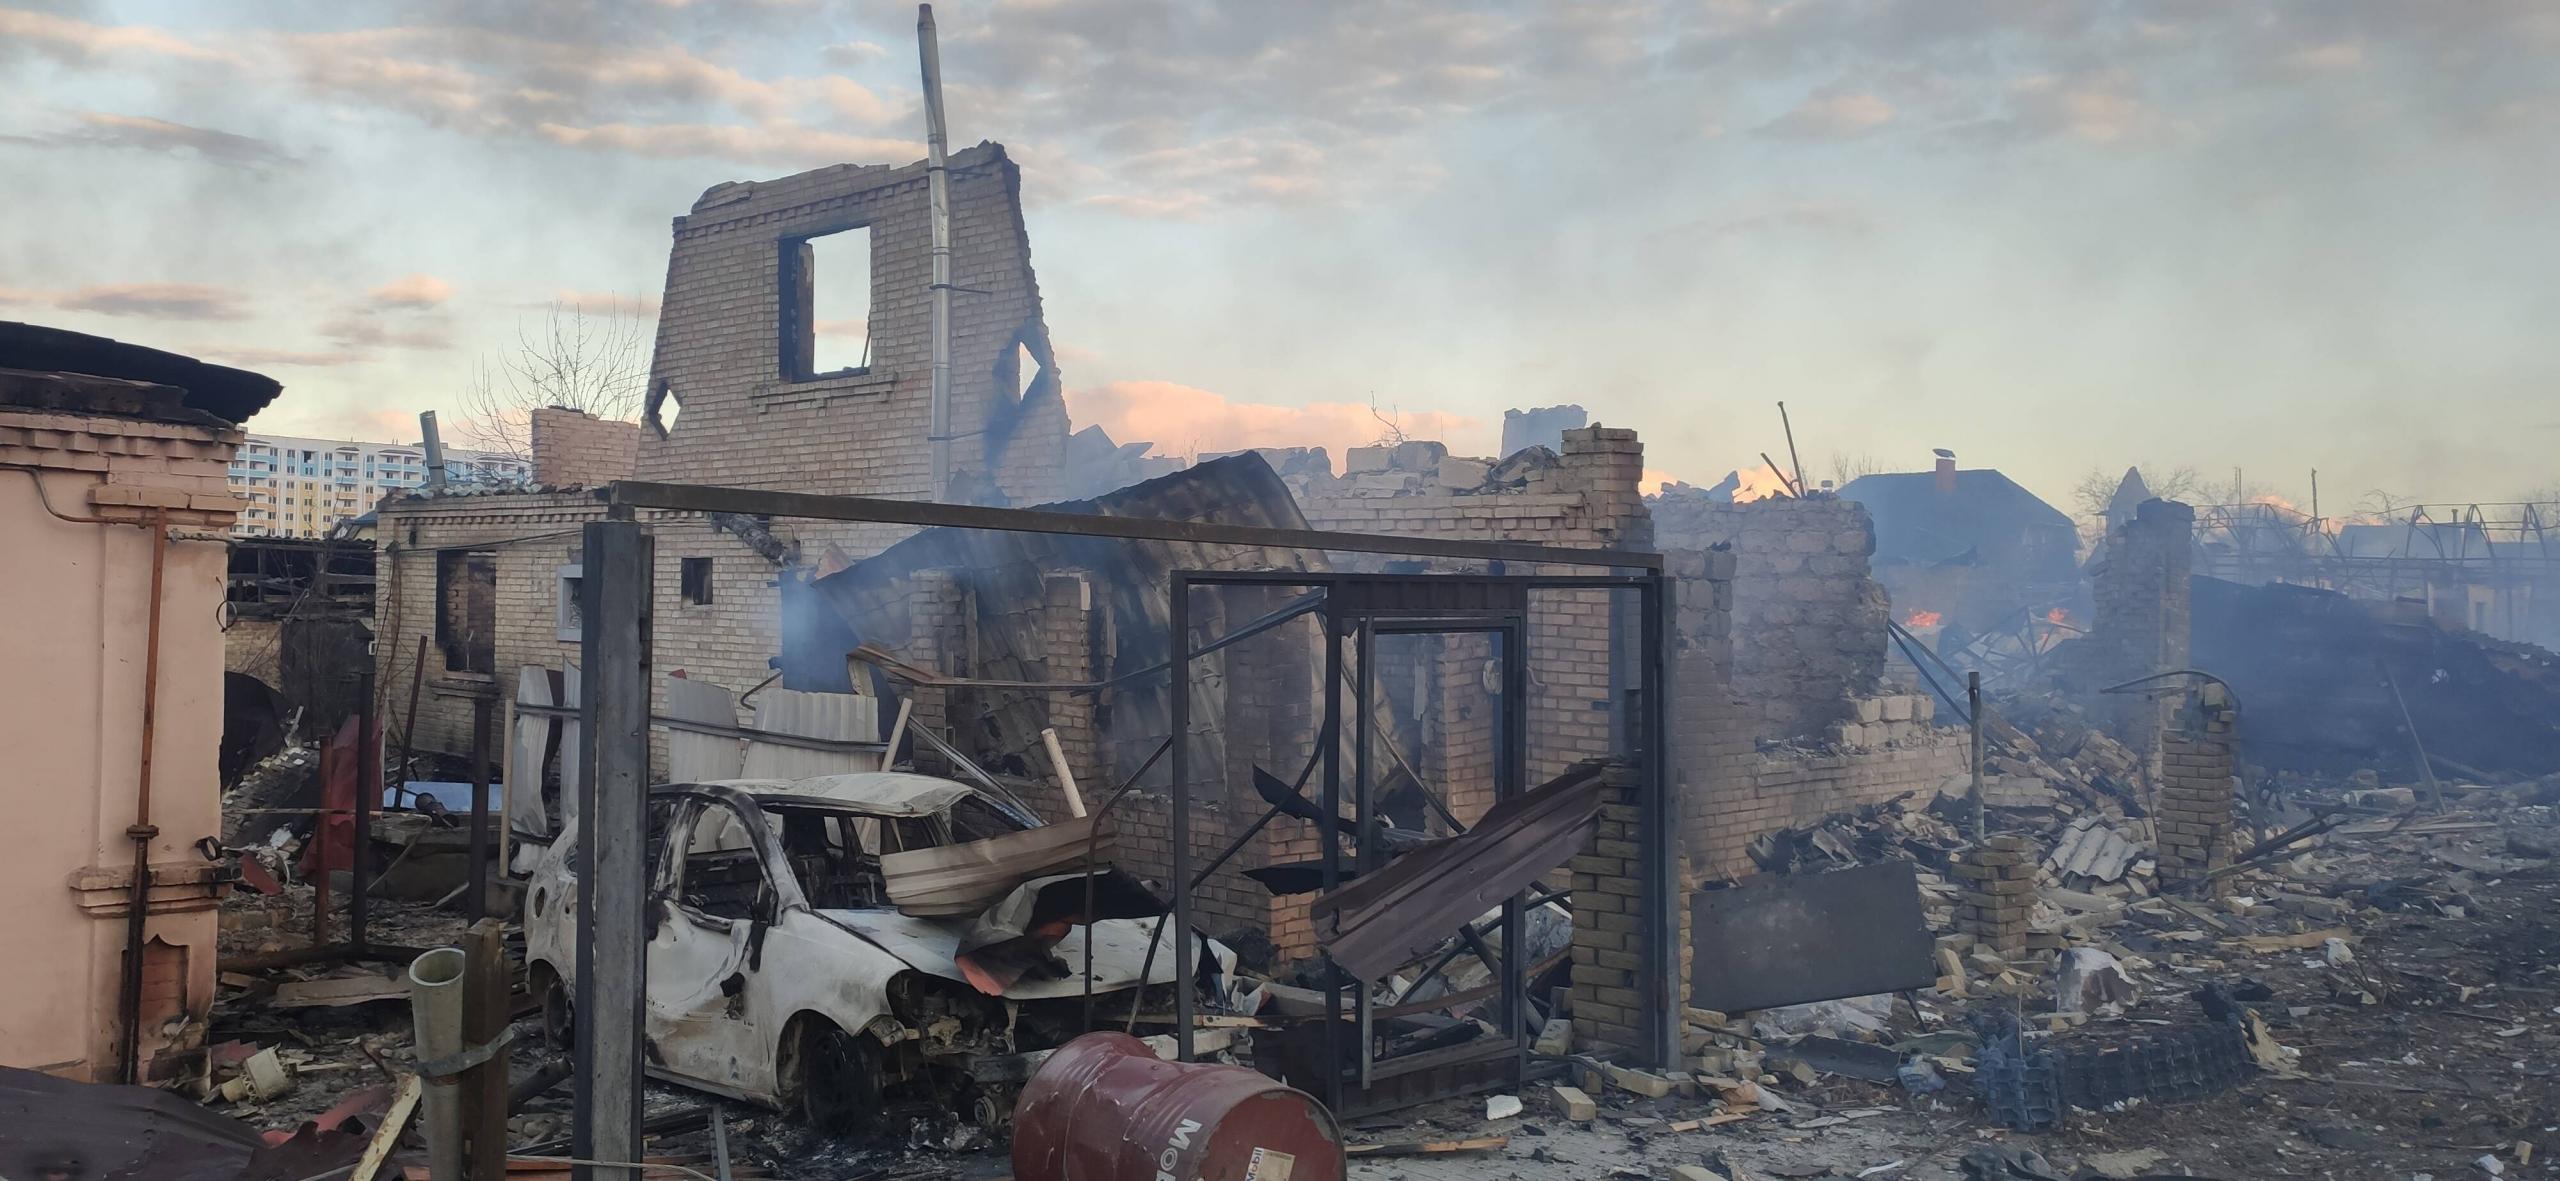 Zerstörte Häuser in Butscha nach dem Beschuss durch die russische Armee, 27. Februar 2022.